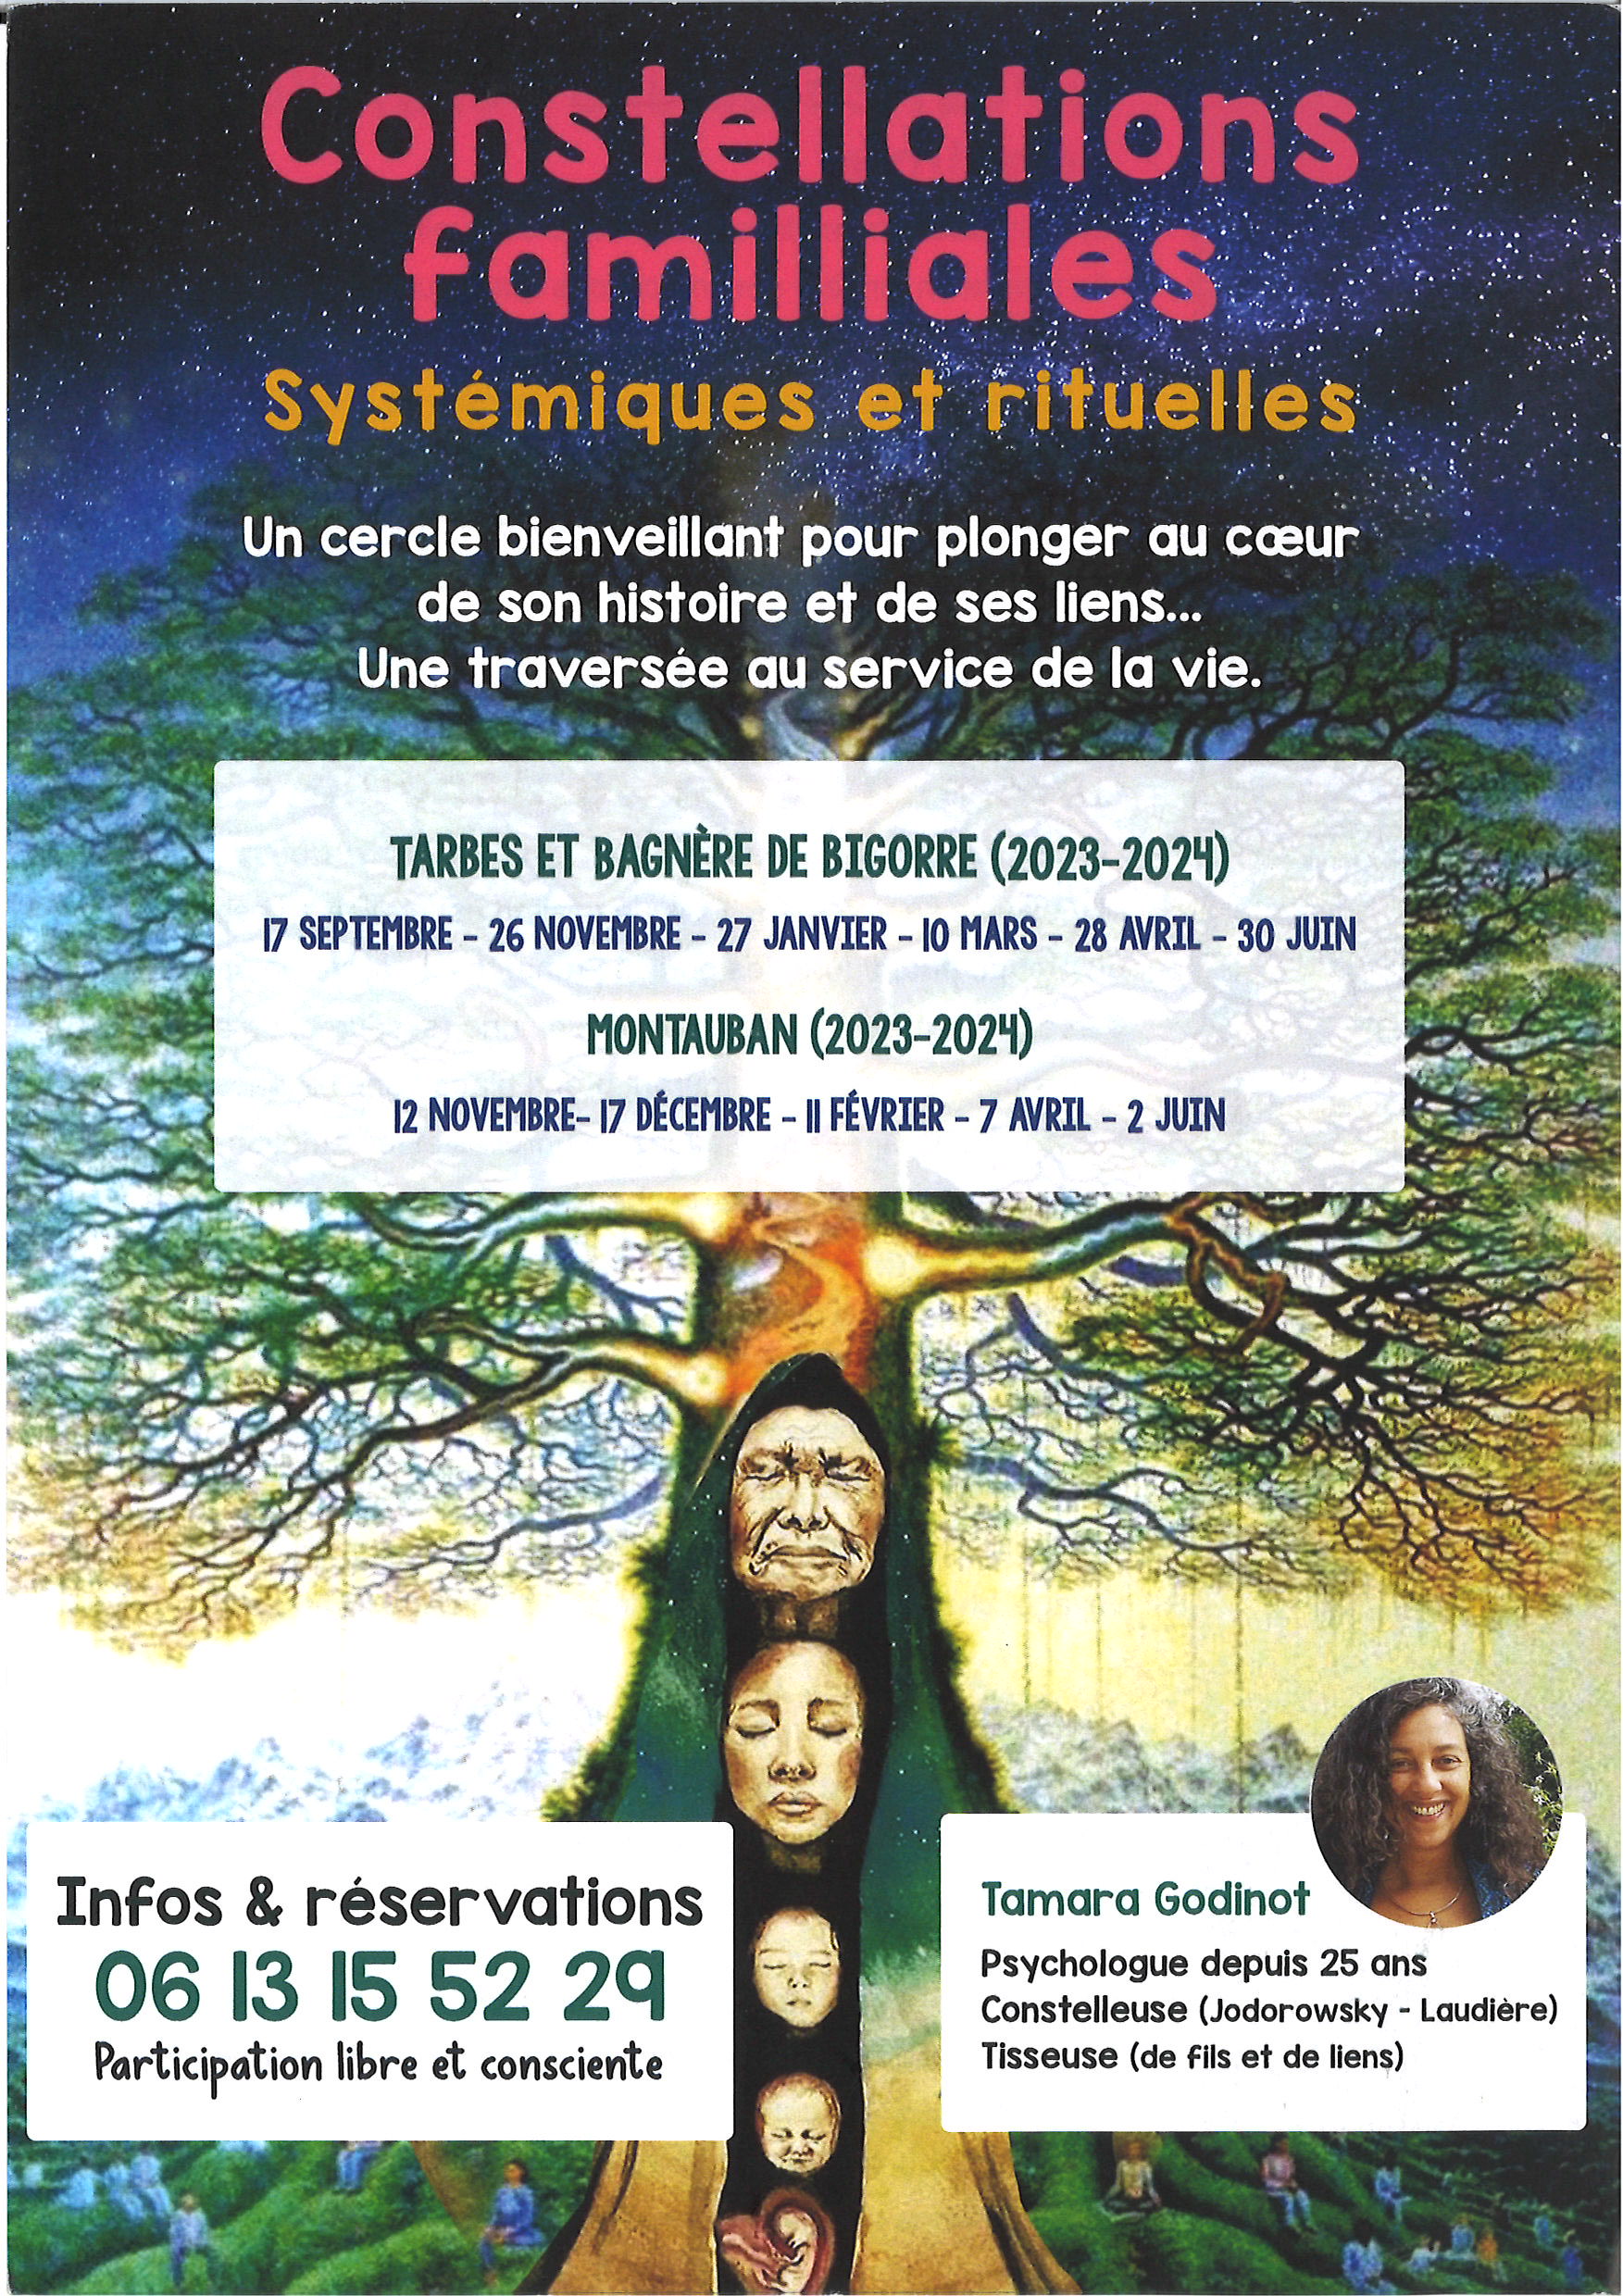 constellations-familiales-systemiques-et-rituelles